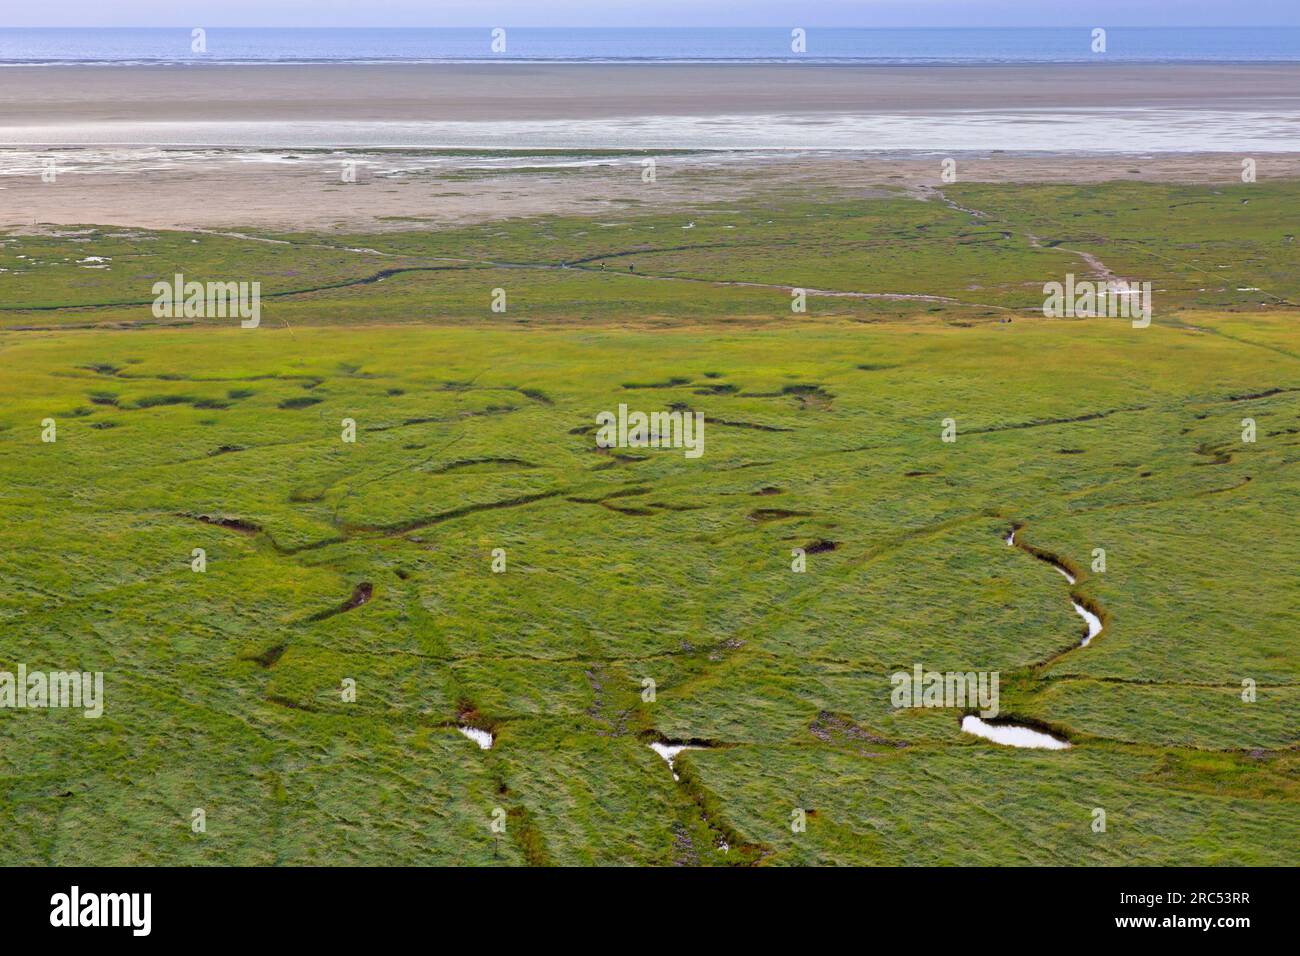 Vista aerea sulla palude salata/palude salmastre e la pianura fangosa in estate, il parco nazionale del Mare di Wadden, la Frisia settentrionale/Nordfriesland, lo Schleswig-Holstein, la Germania Foto Stock